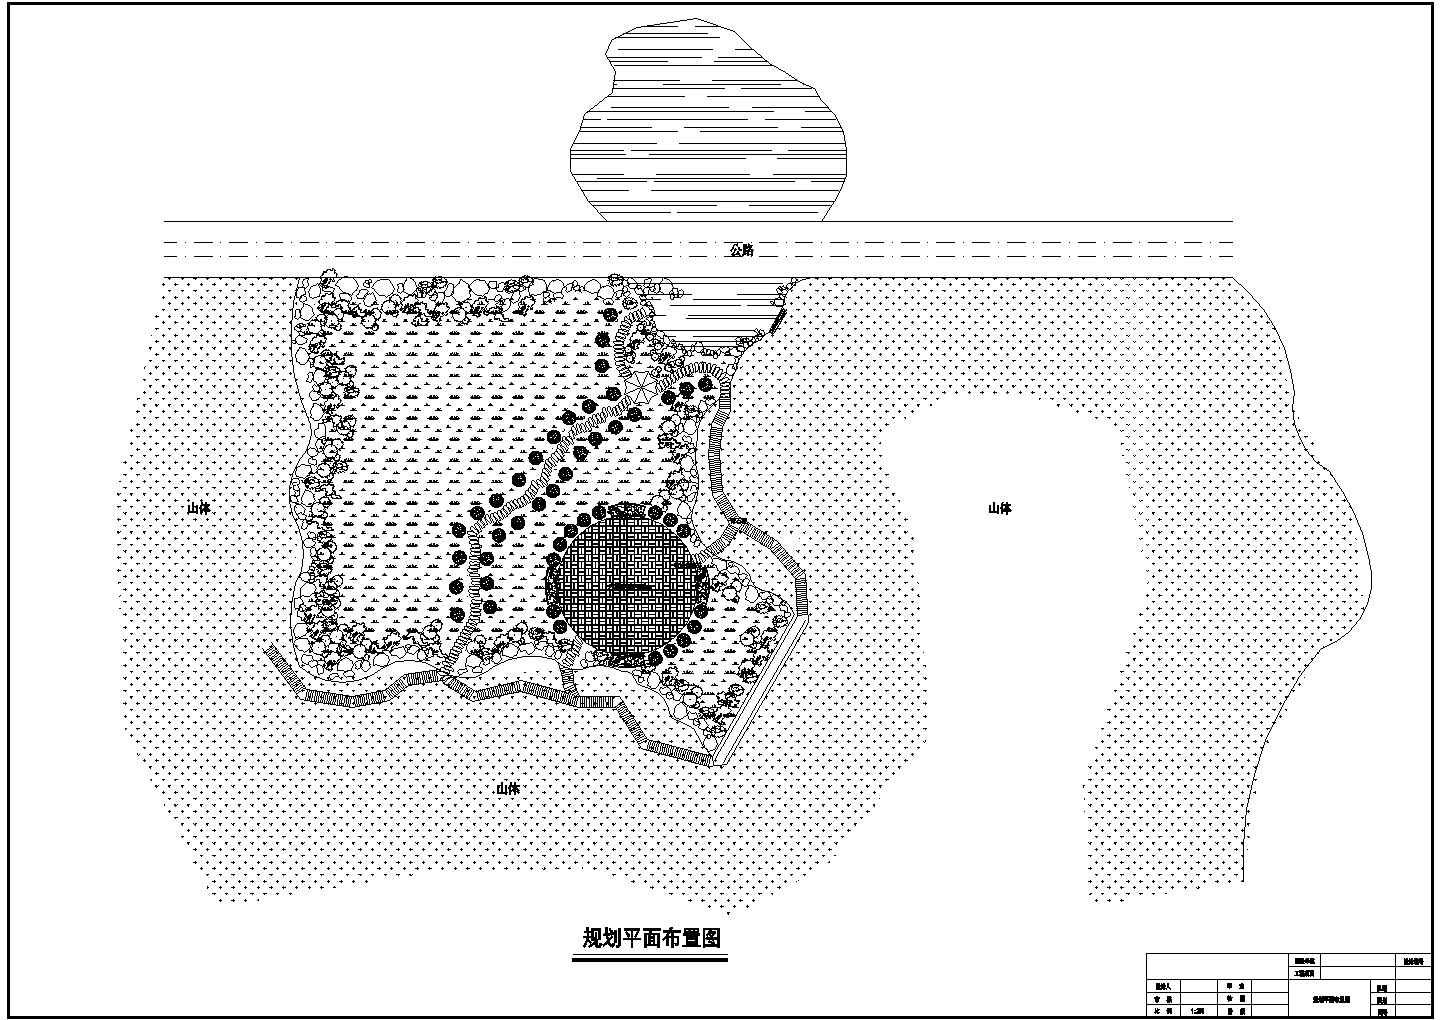 某武乡一景点CAD景观设计规划平面图